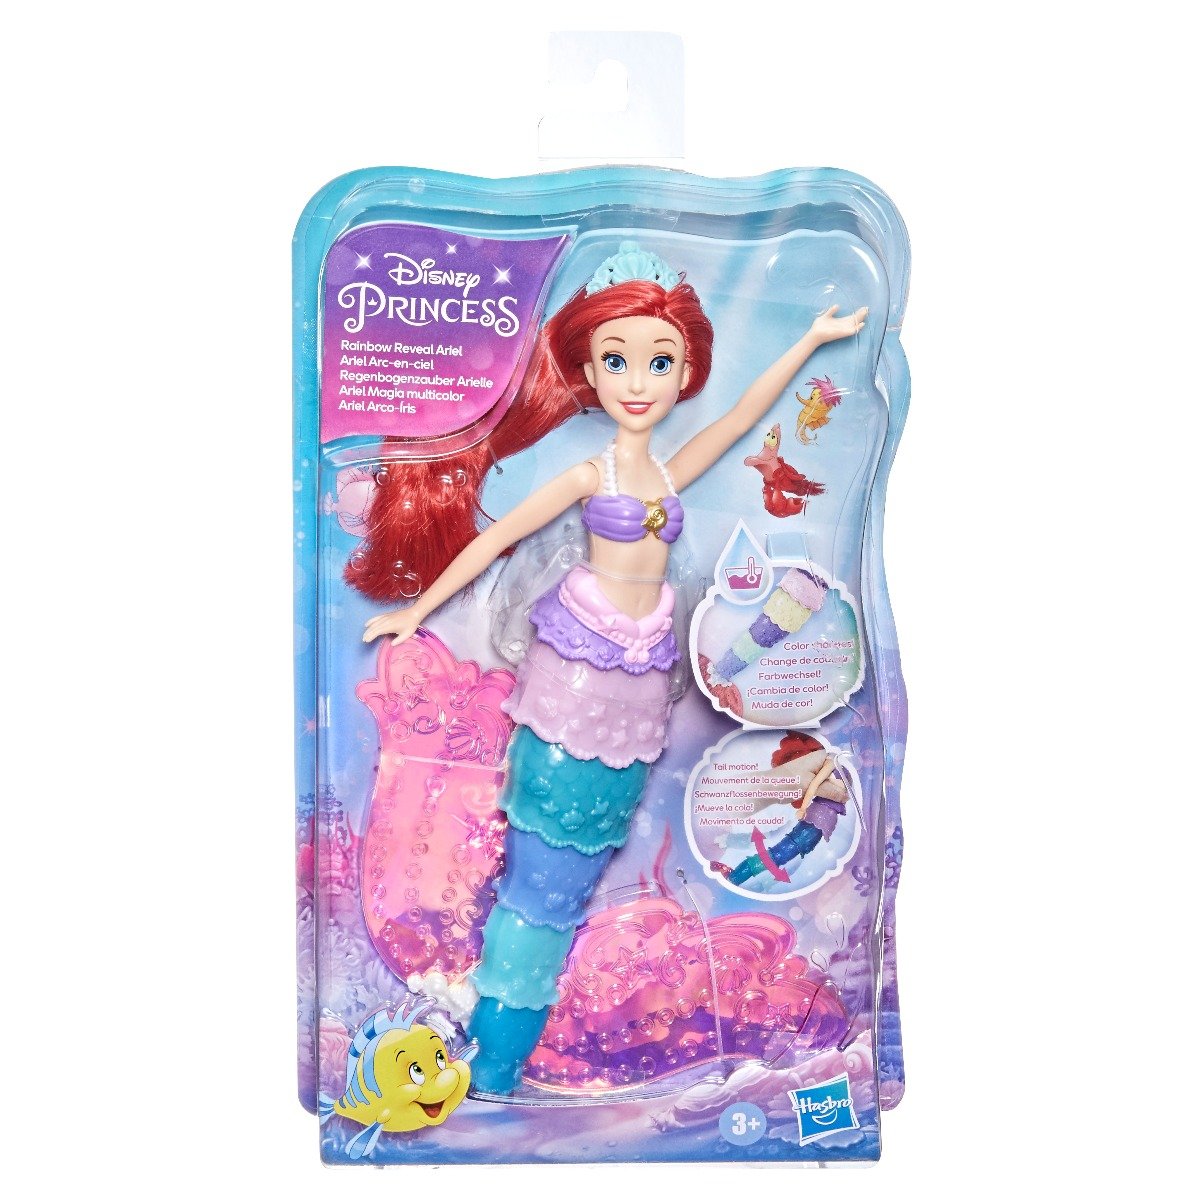 Papusa Disney Princess  Rainbow Reveal Ariel Ariel